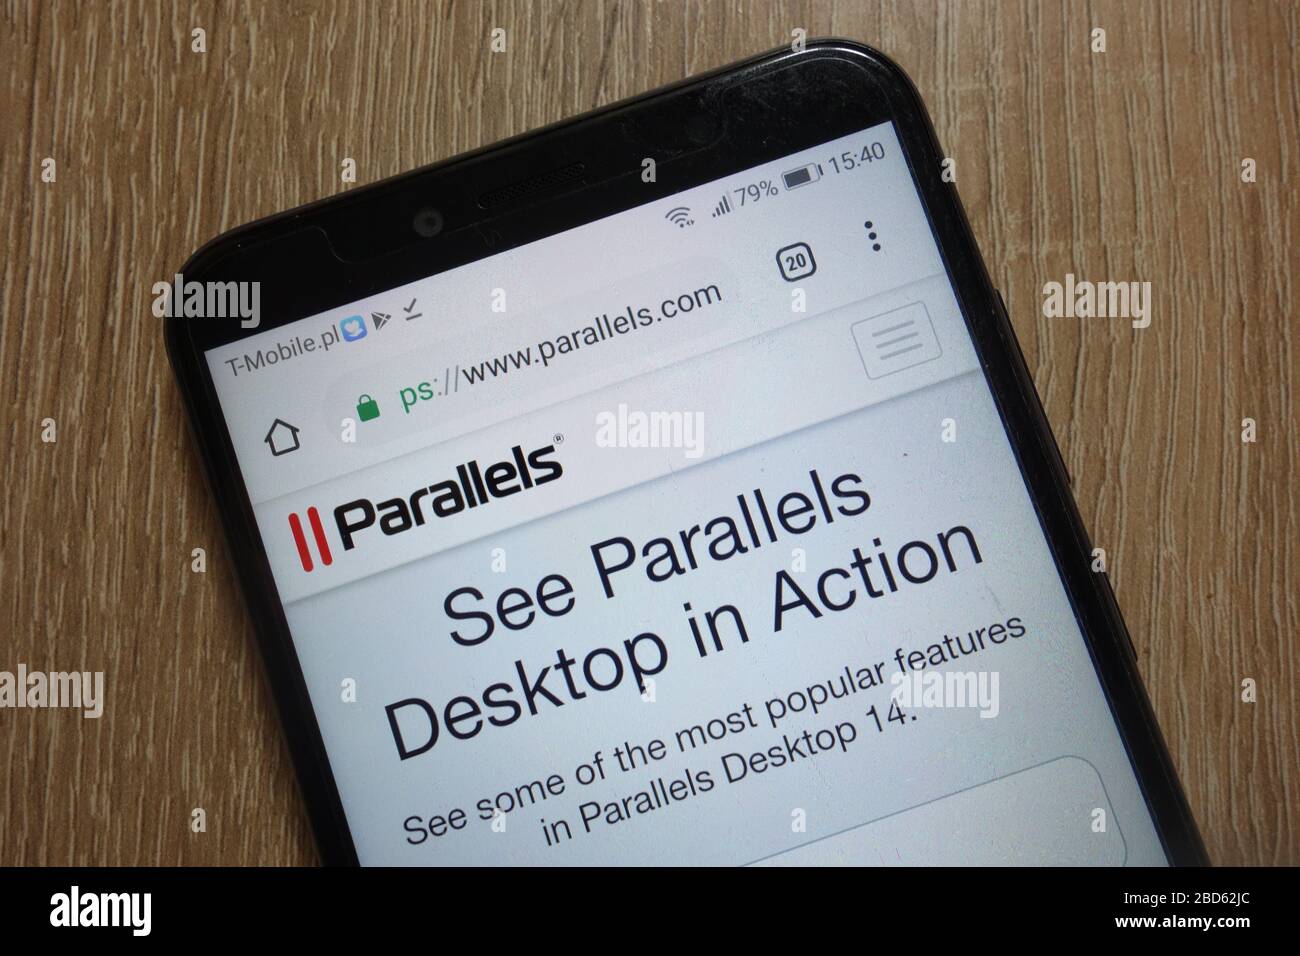 Sito Web aziendale Parallels (www.parallels.com) visualizzato sullo smartphone Foto Stock